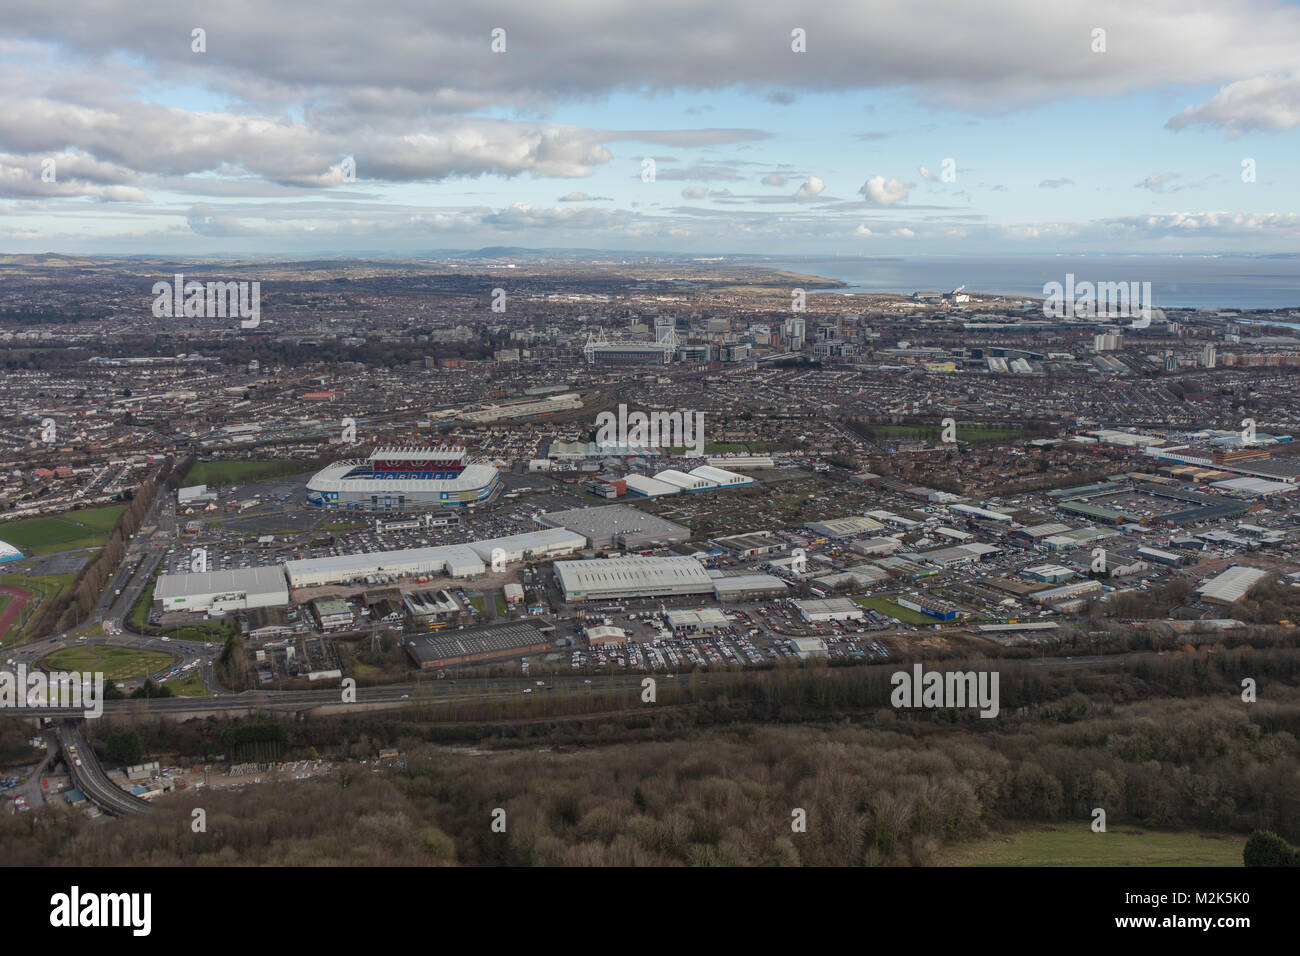 Une vue aérienne de l'horizon de la capitale galloise Cardiff avec le canal de Bristol visible au-delà Banque D'Images